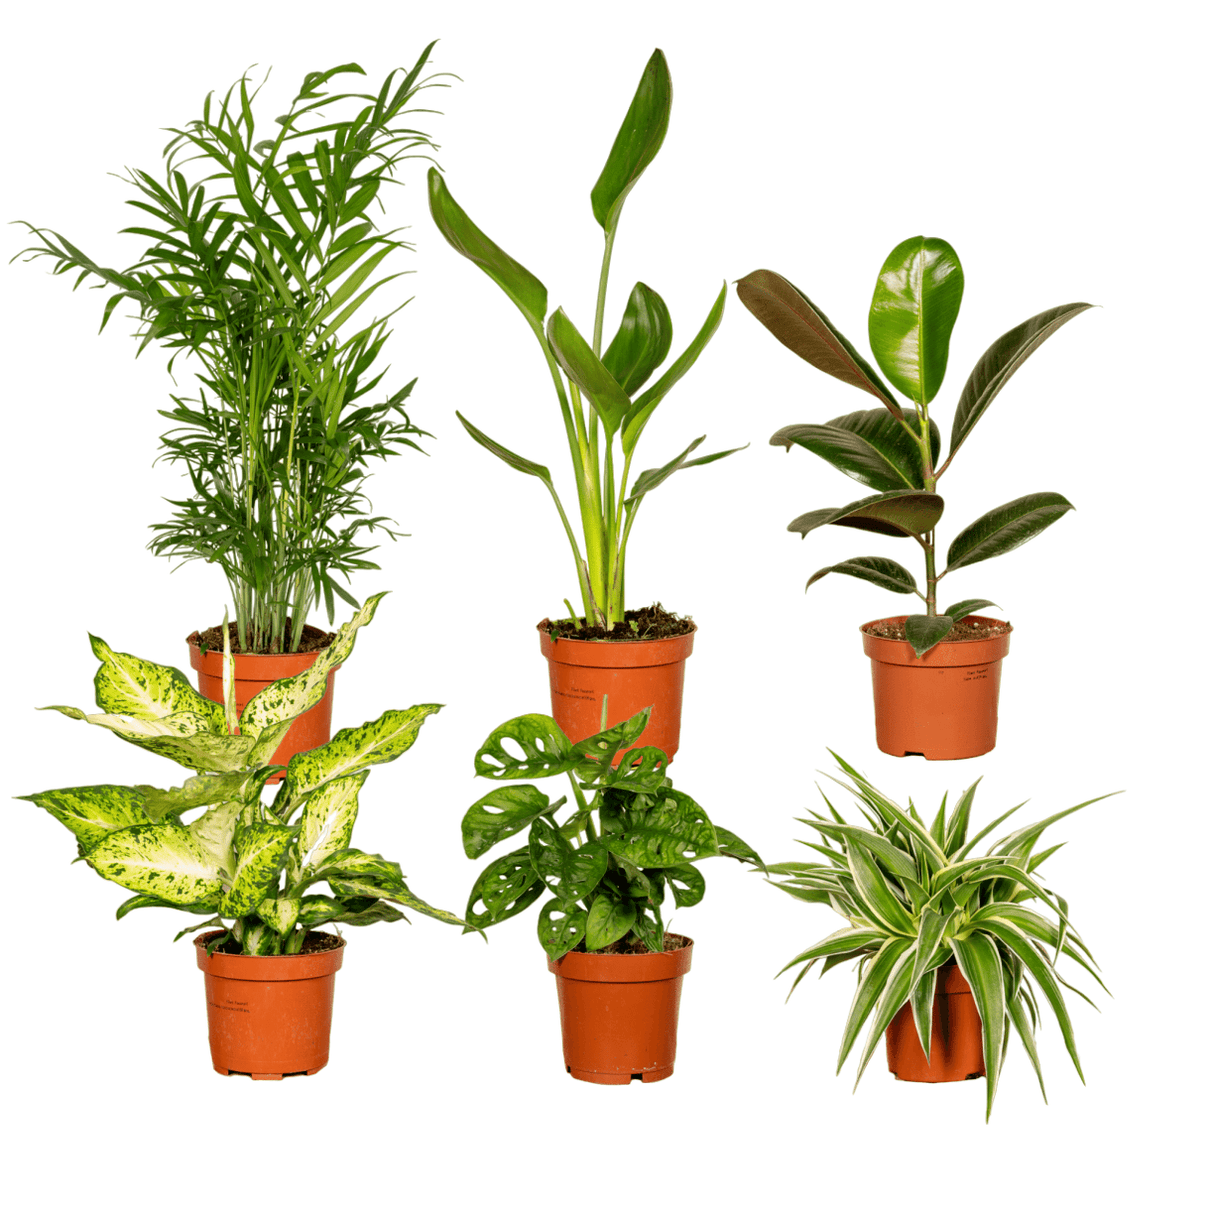 Surprise box - Set of 8 plants